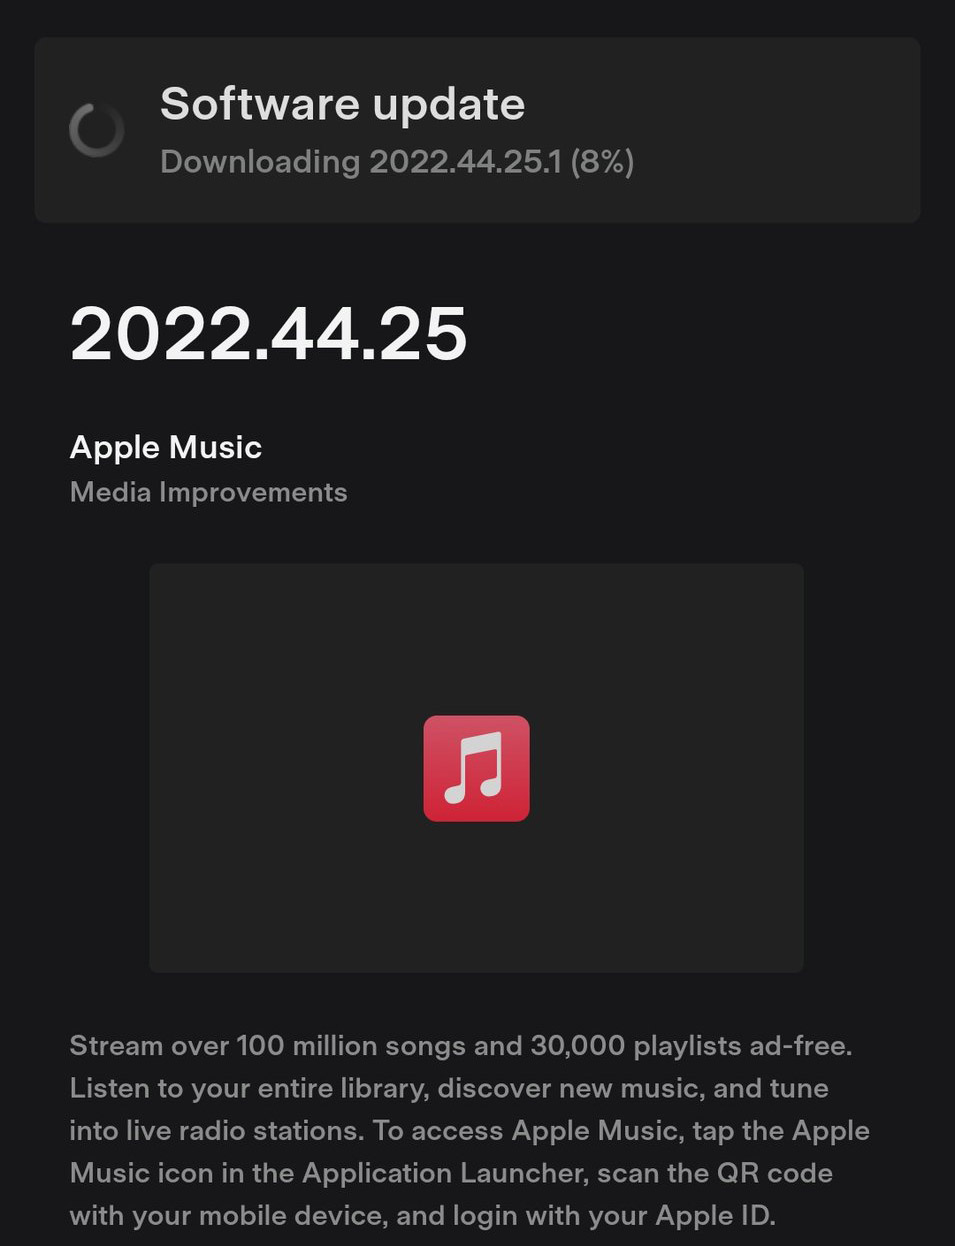 馬斯克造訪蘋果總部後！特斯拉正式支援Apple Music | Apple Music, Spotify, Tesla, Tidal, 特斯拉, 蘋果音樂 | iPhone News 愛瘋了